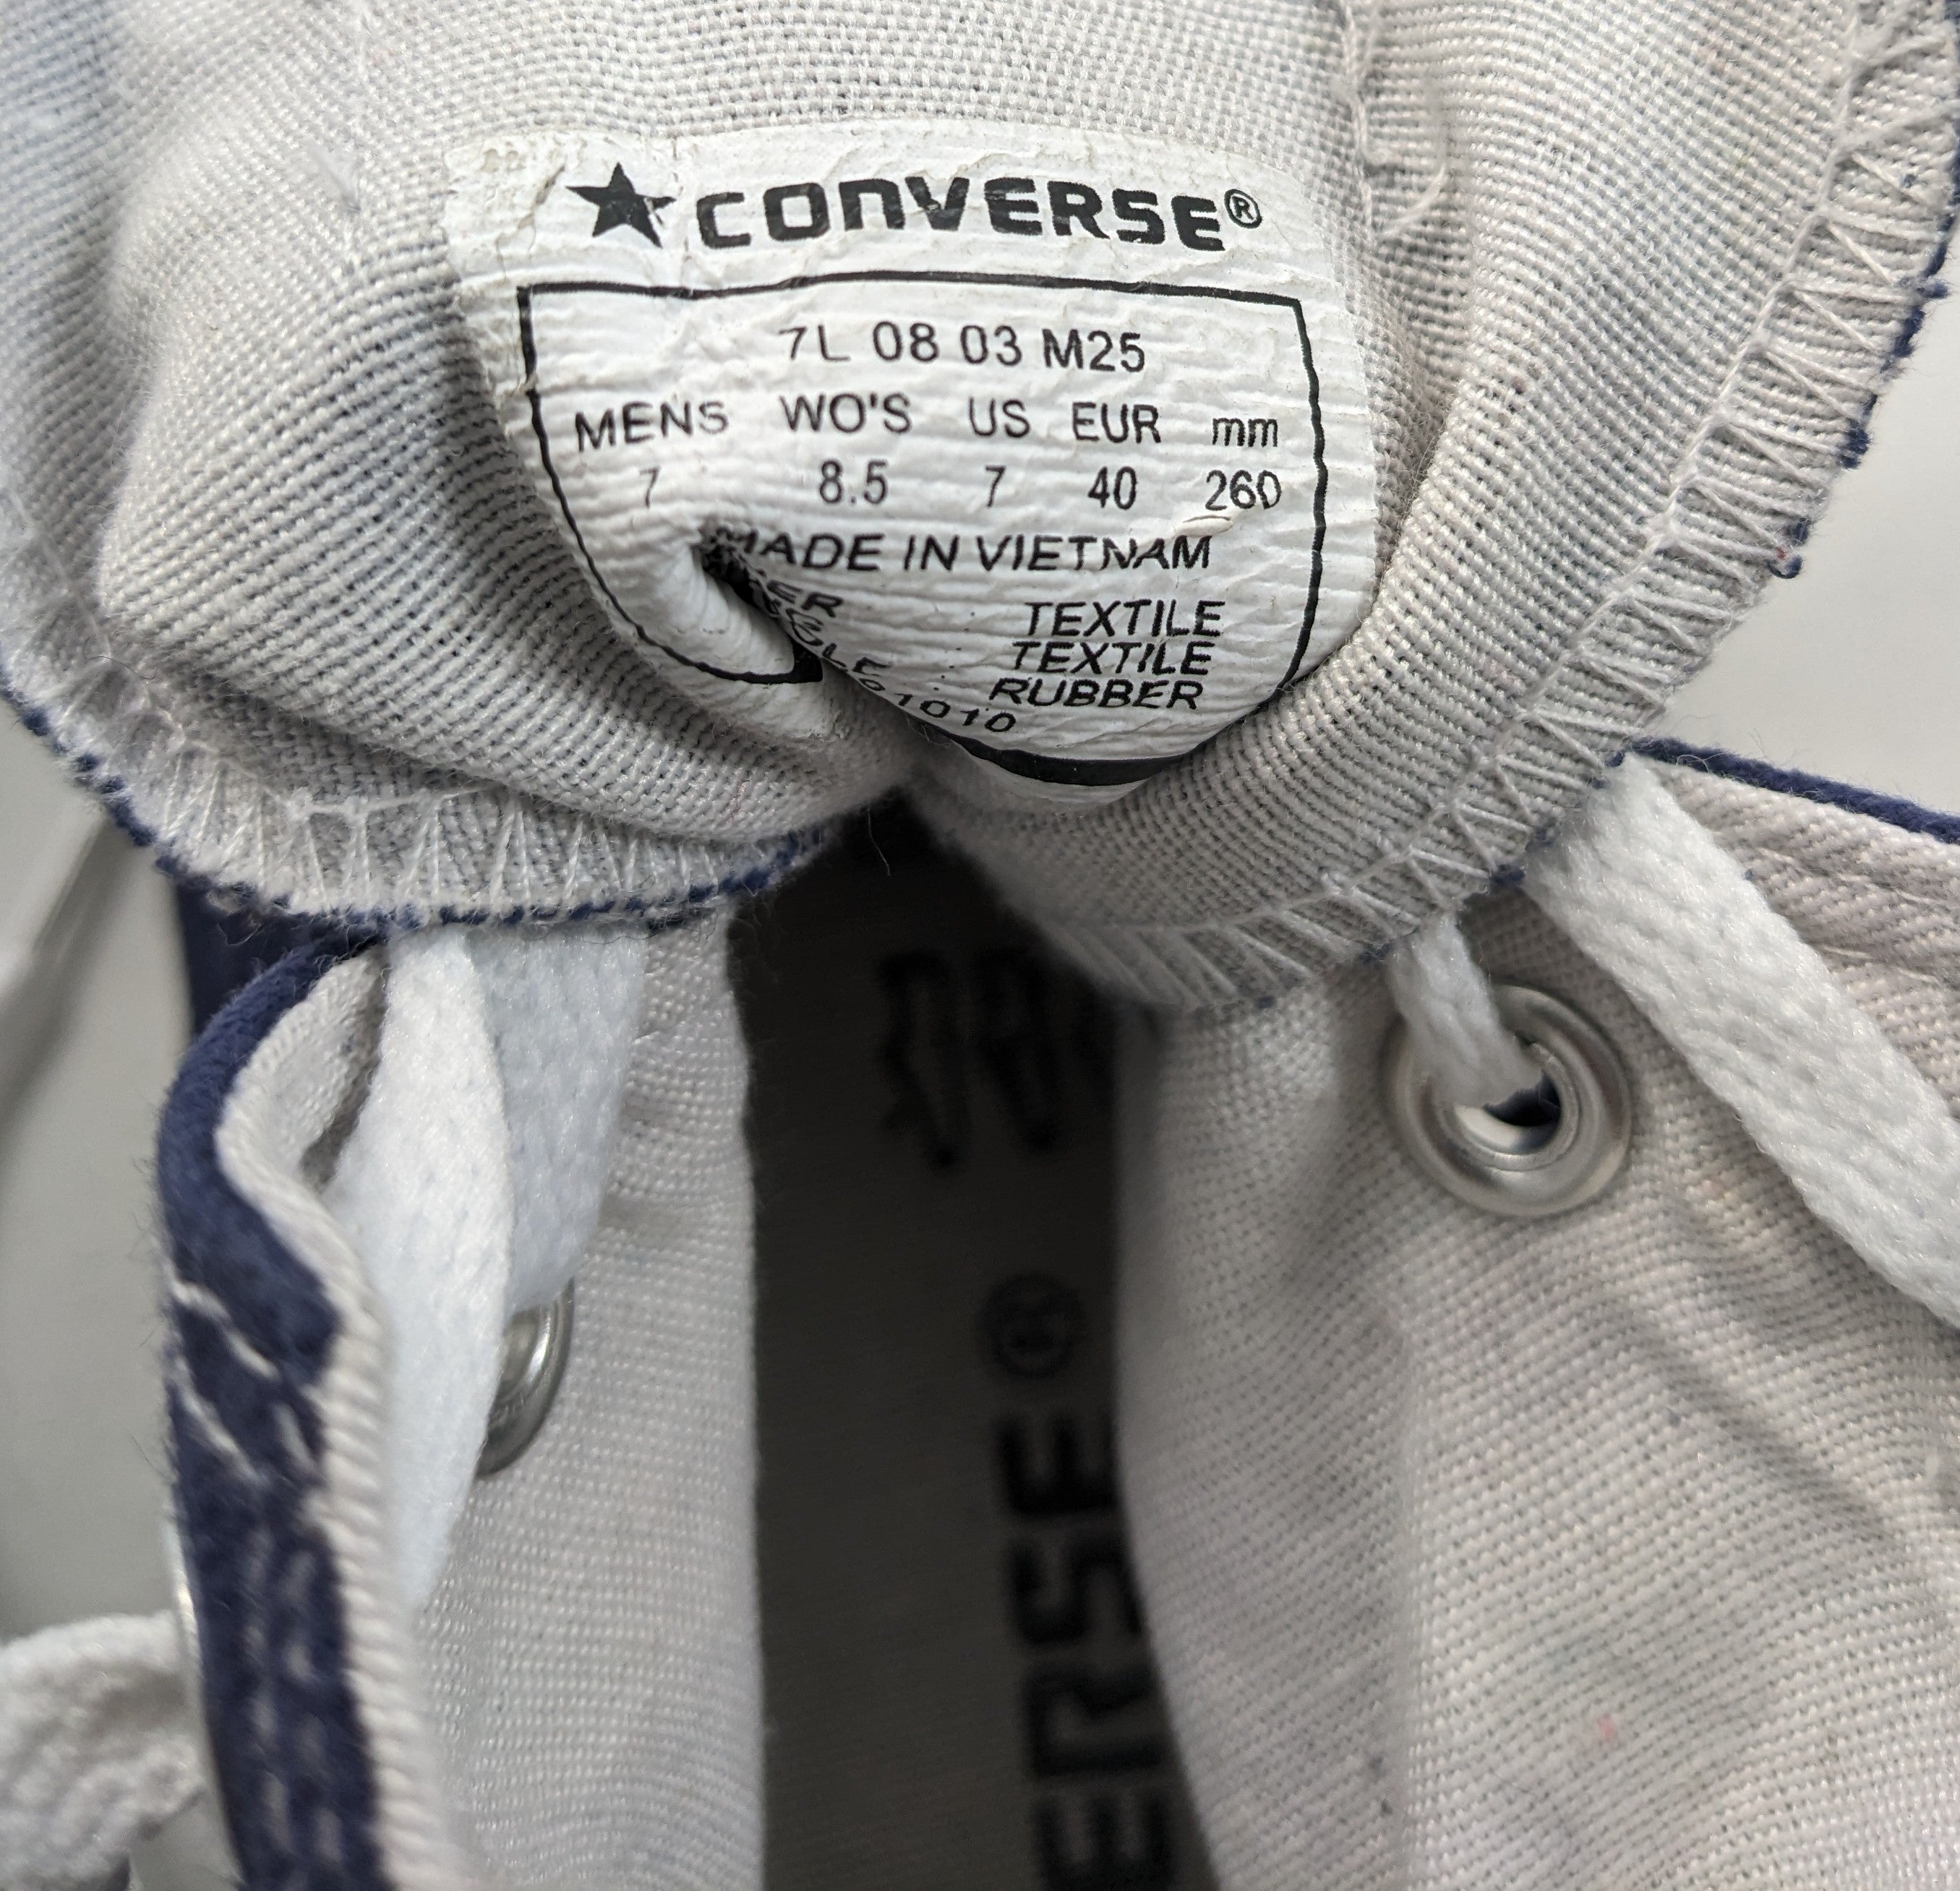 Converse Blue Sneakers Premium C